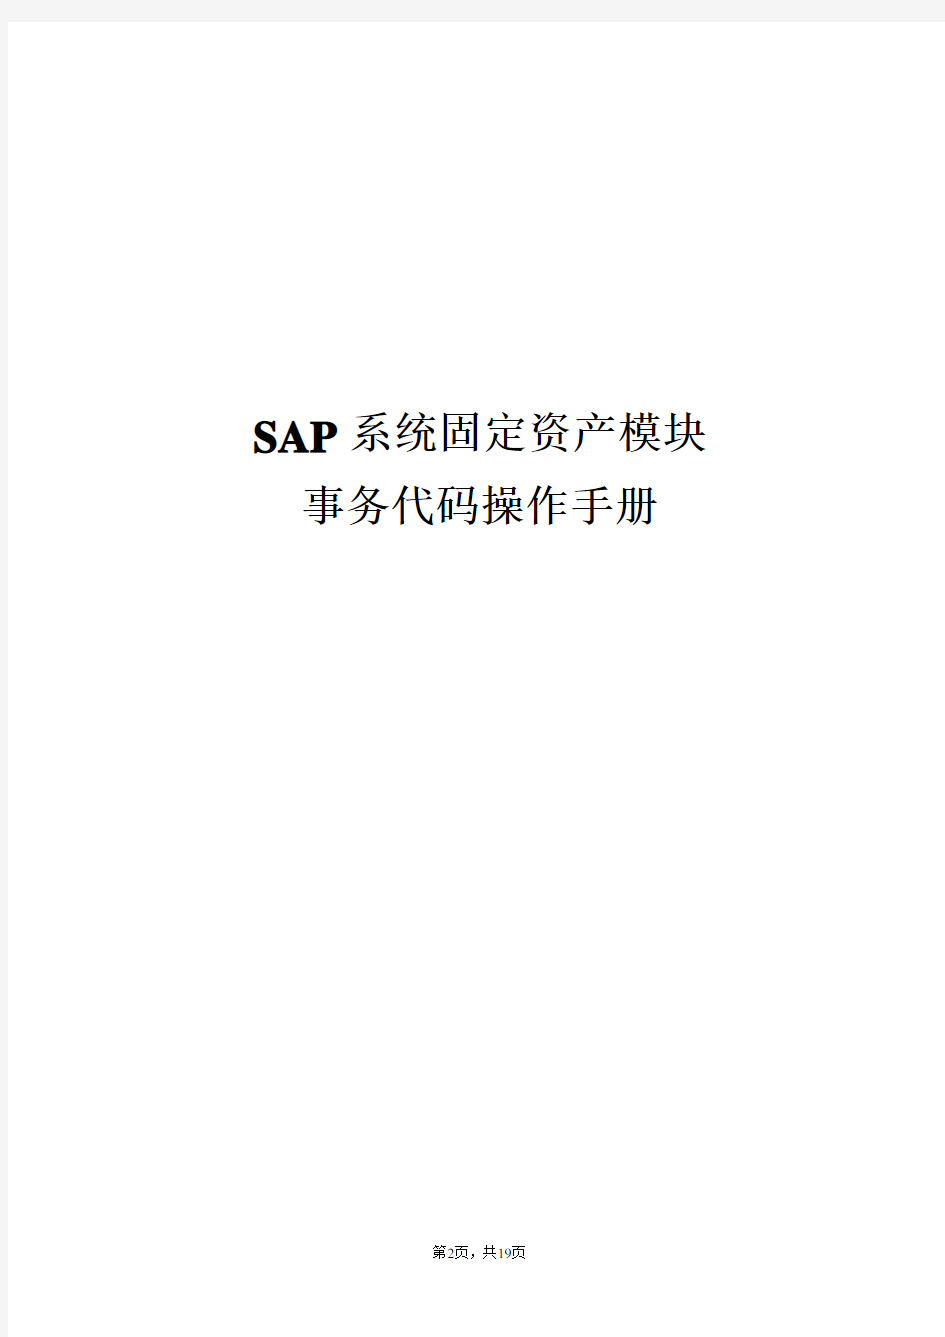 SAP固定资产计提减值准备(重估法)操作手册